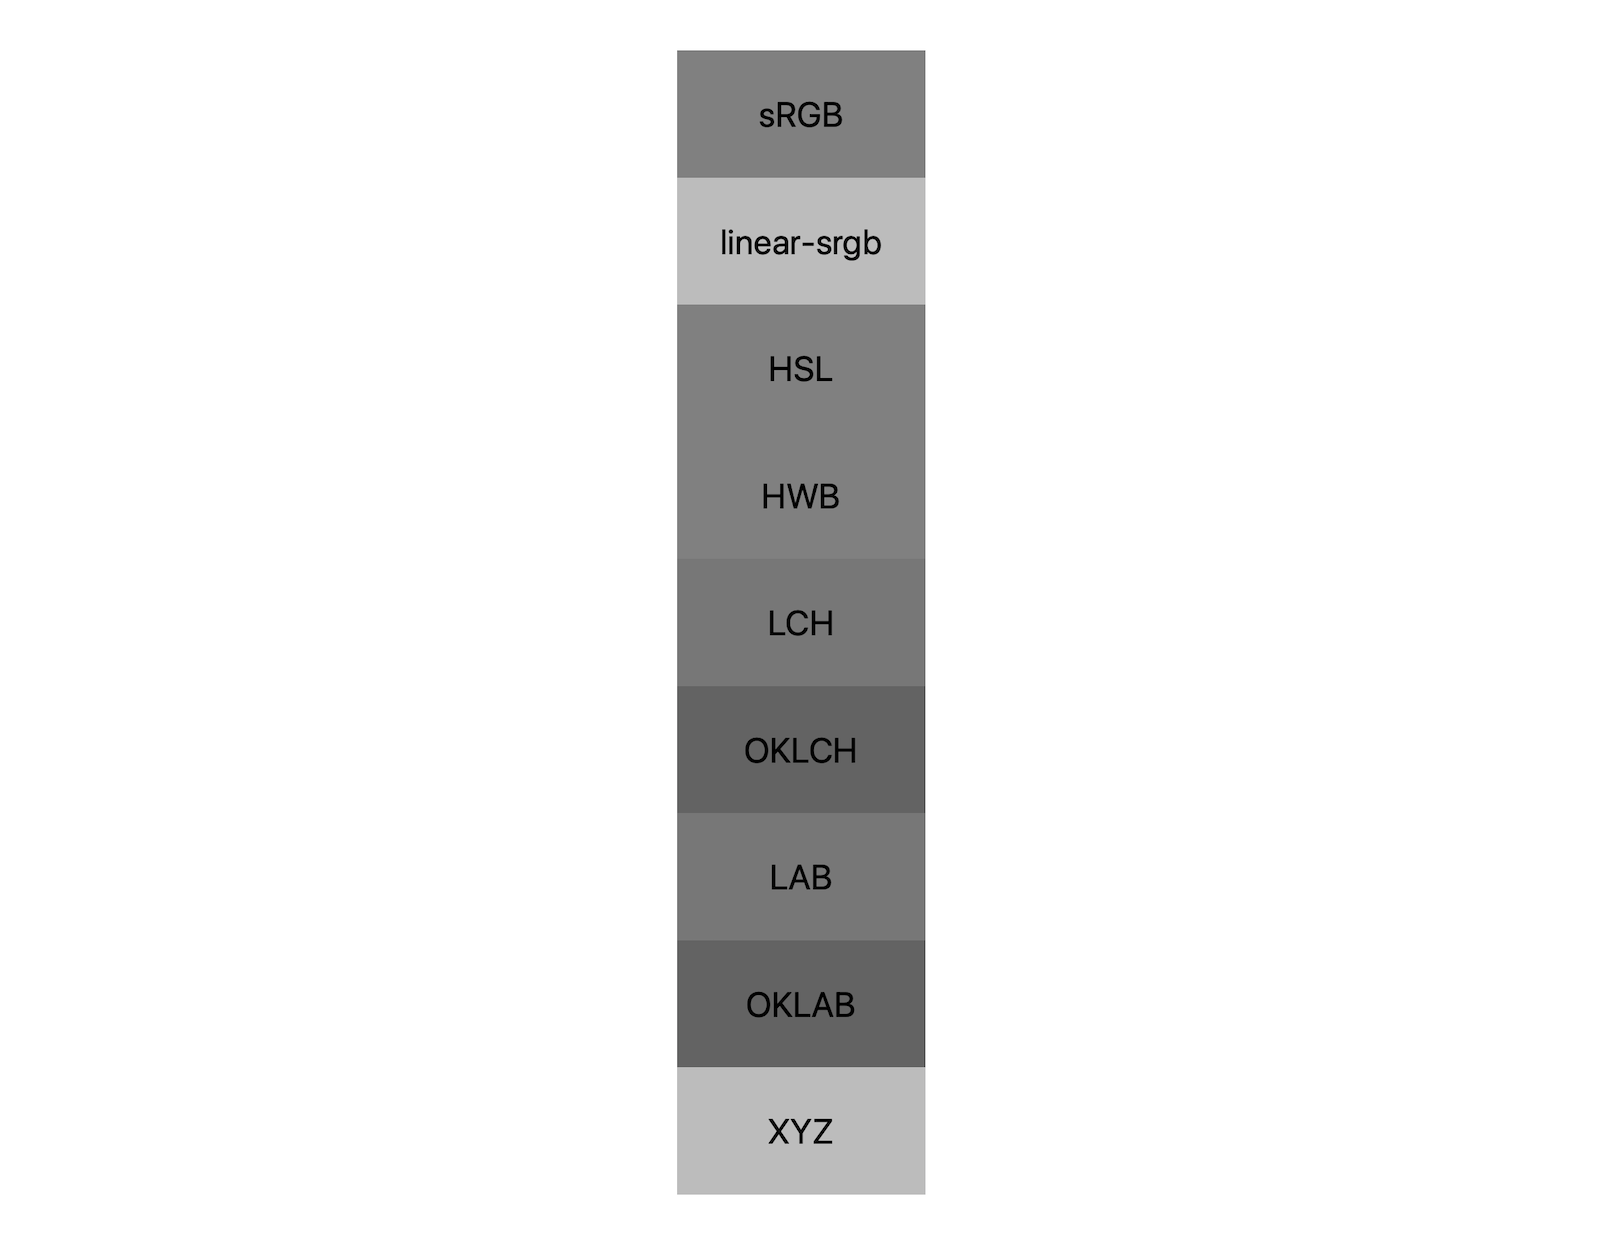 Sete espaços de cor (srgb, linear-srgb, lch, oklch, lab, oklab, xyz) mostram os resultados da mistura de preto e branco. Cerca de cinco tons diferentes são mostrados, demonstrando que cada espaço de cor vai se misturar a um cinza de maneira diferente.